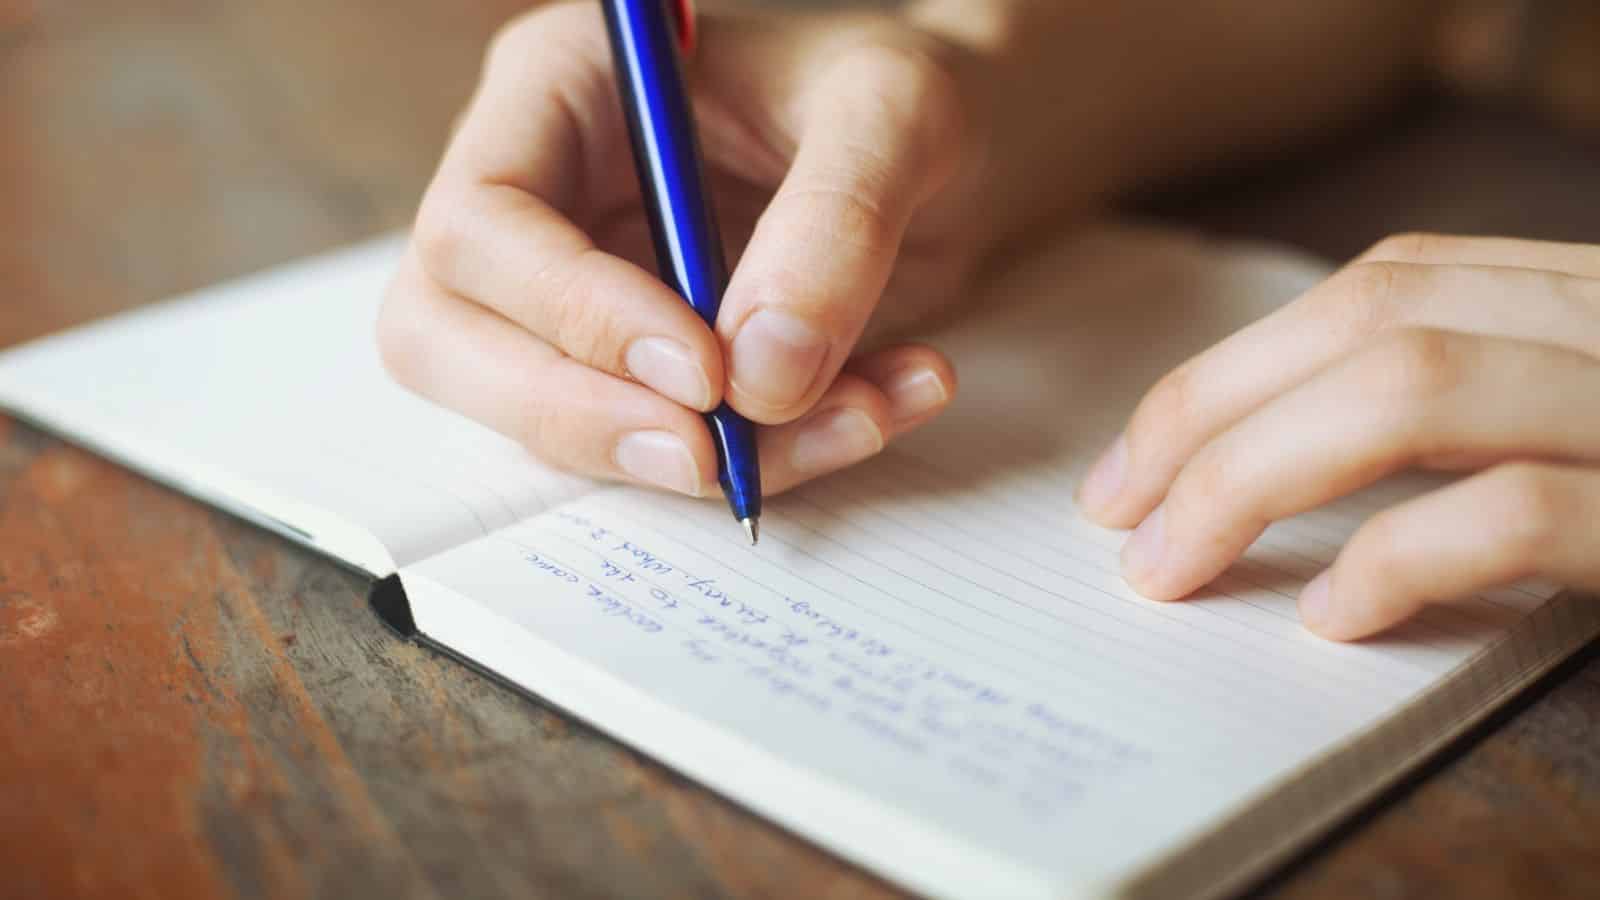 Letra feia - O que pode significar ter a caligrafia feia?